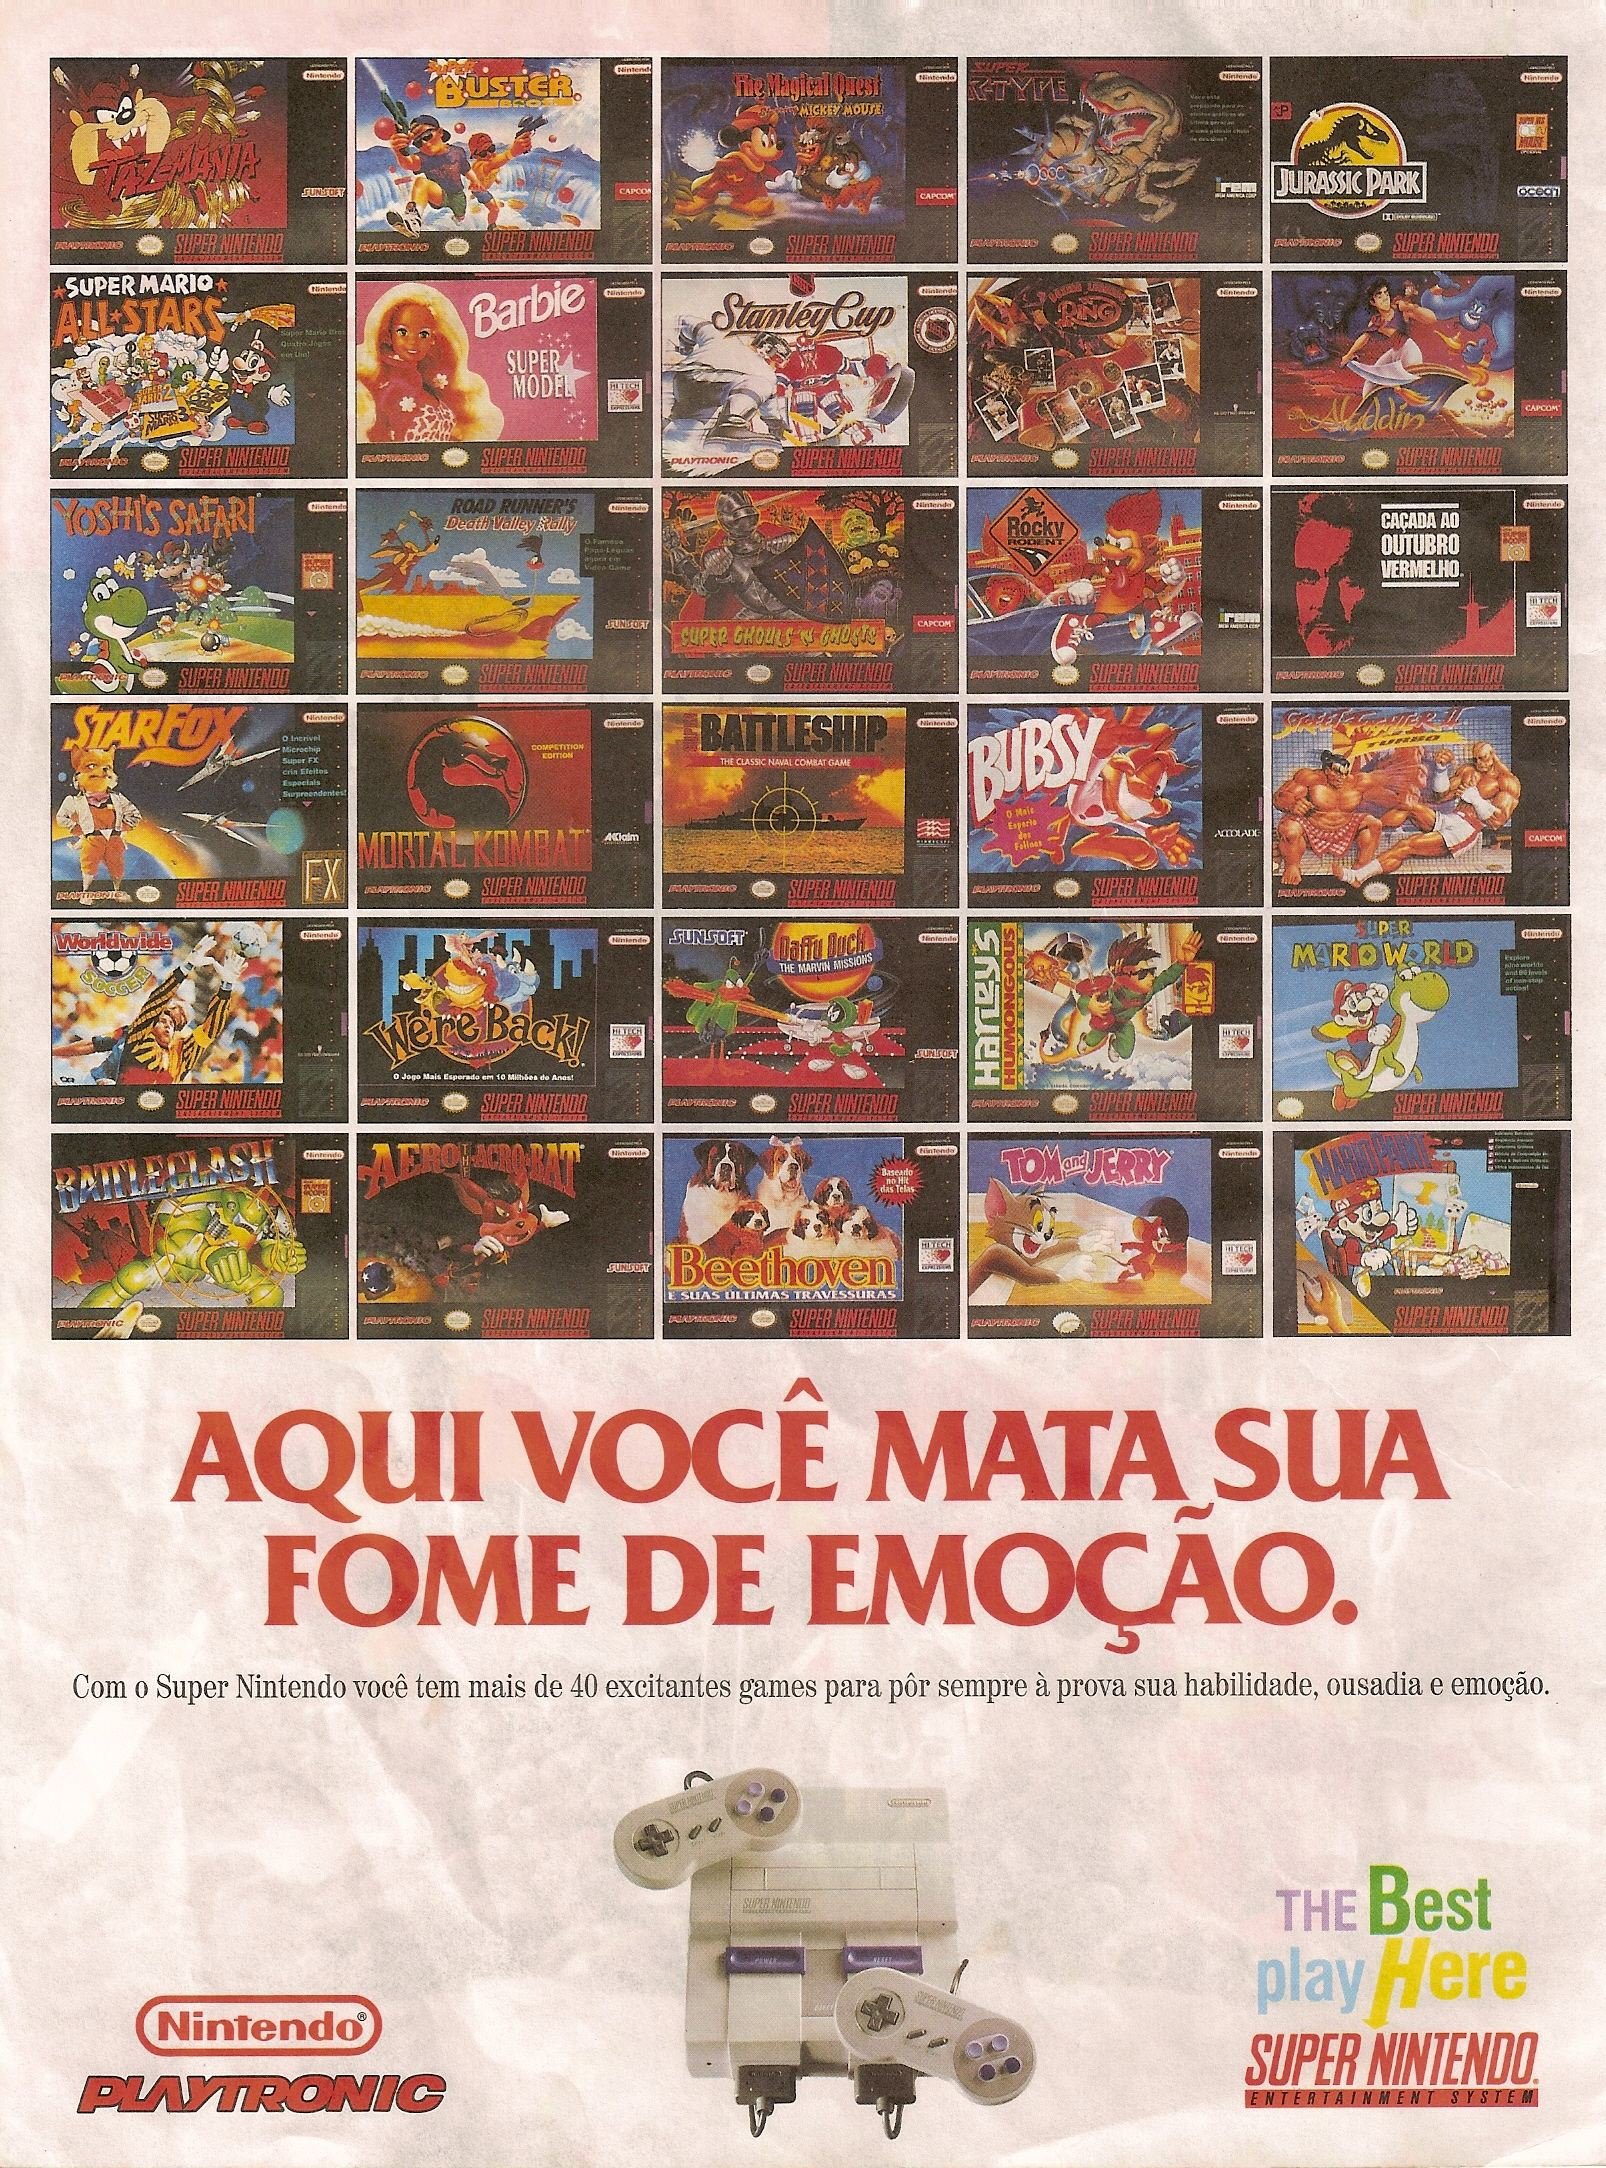 Advertisement from a Brazillian magazine